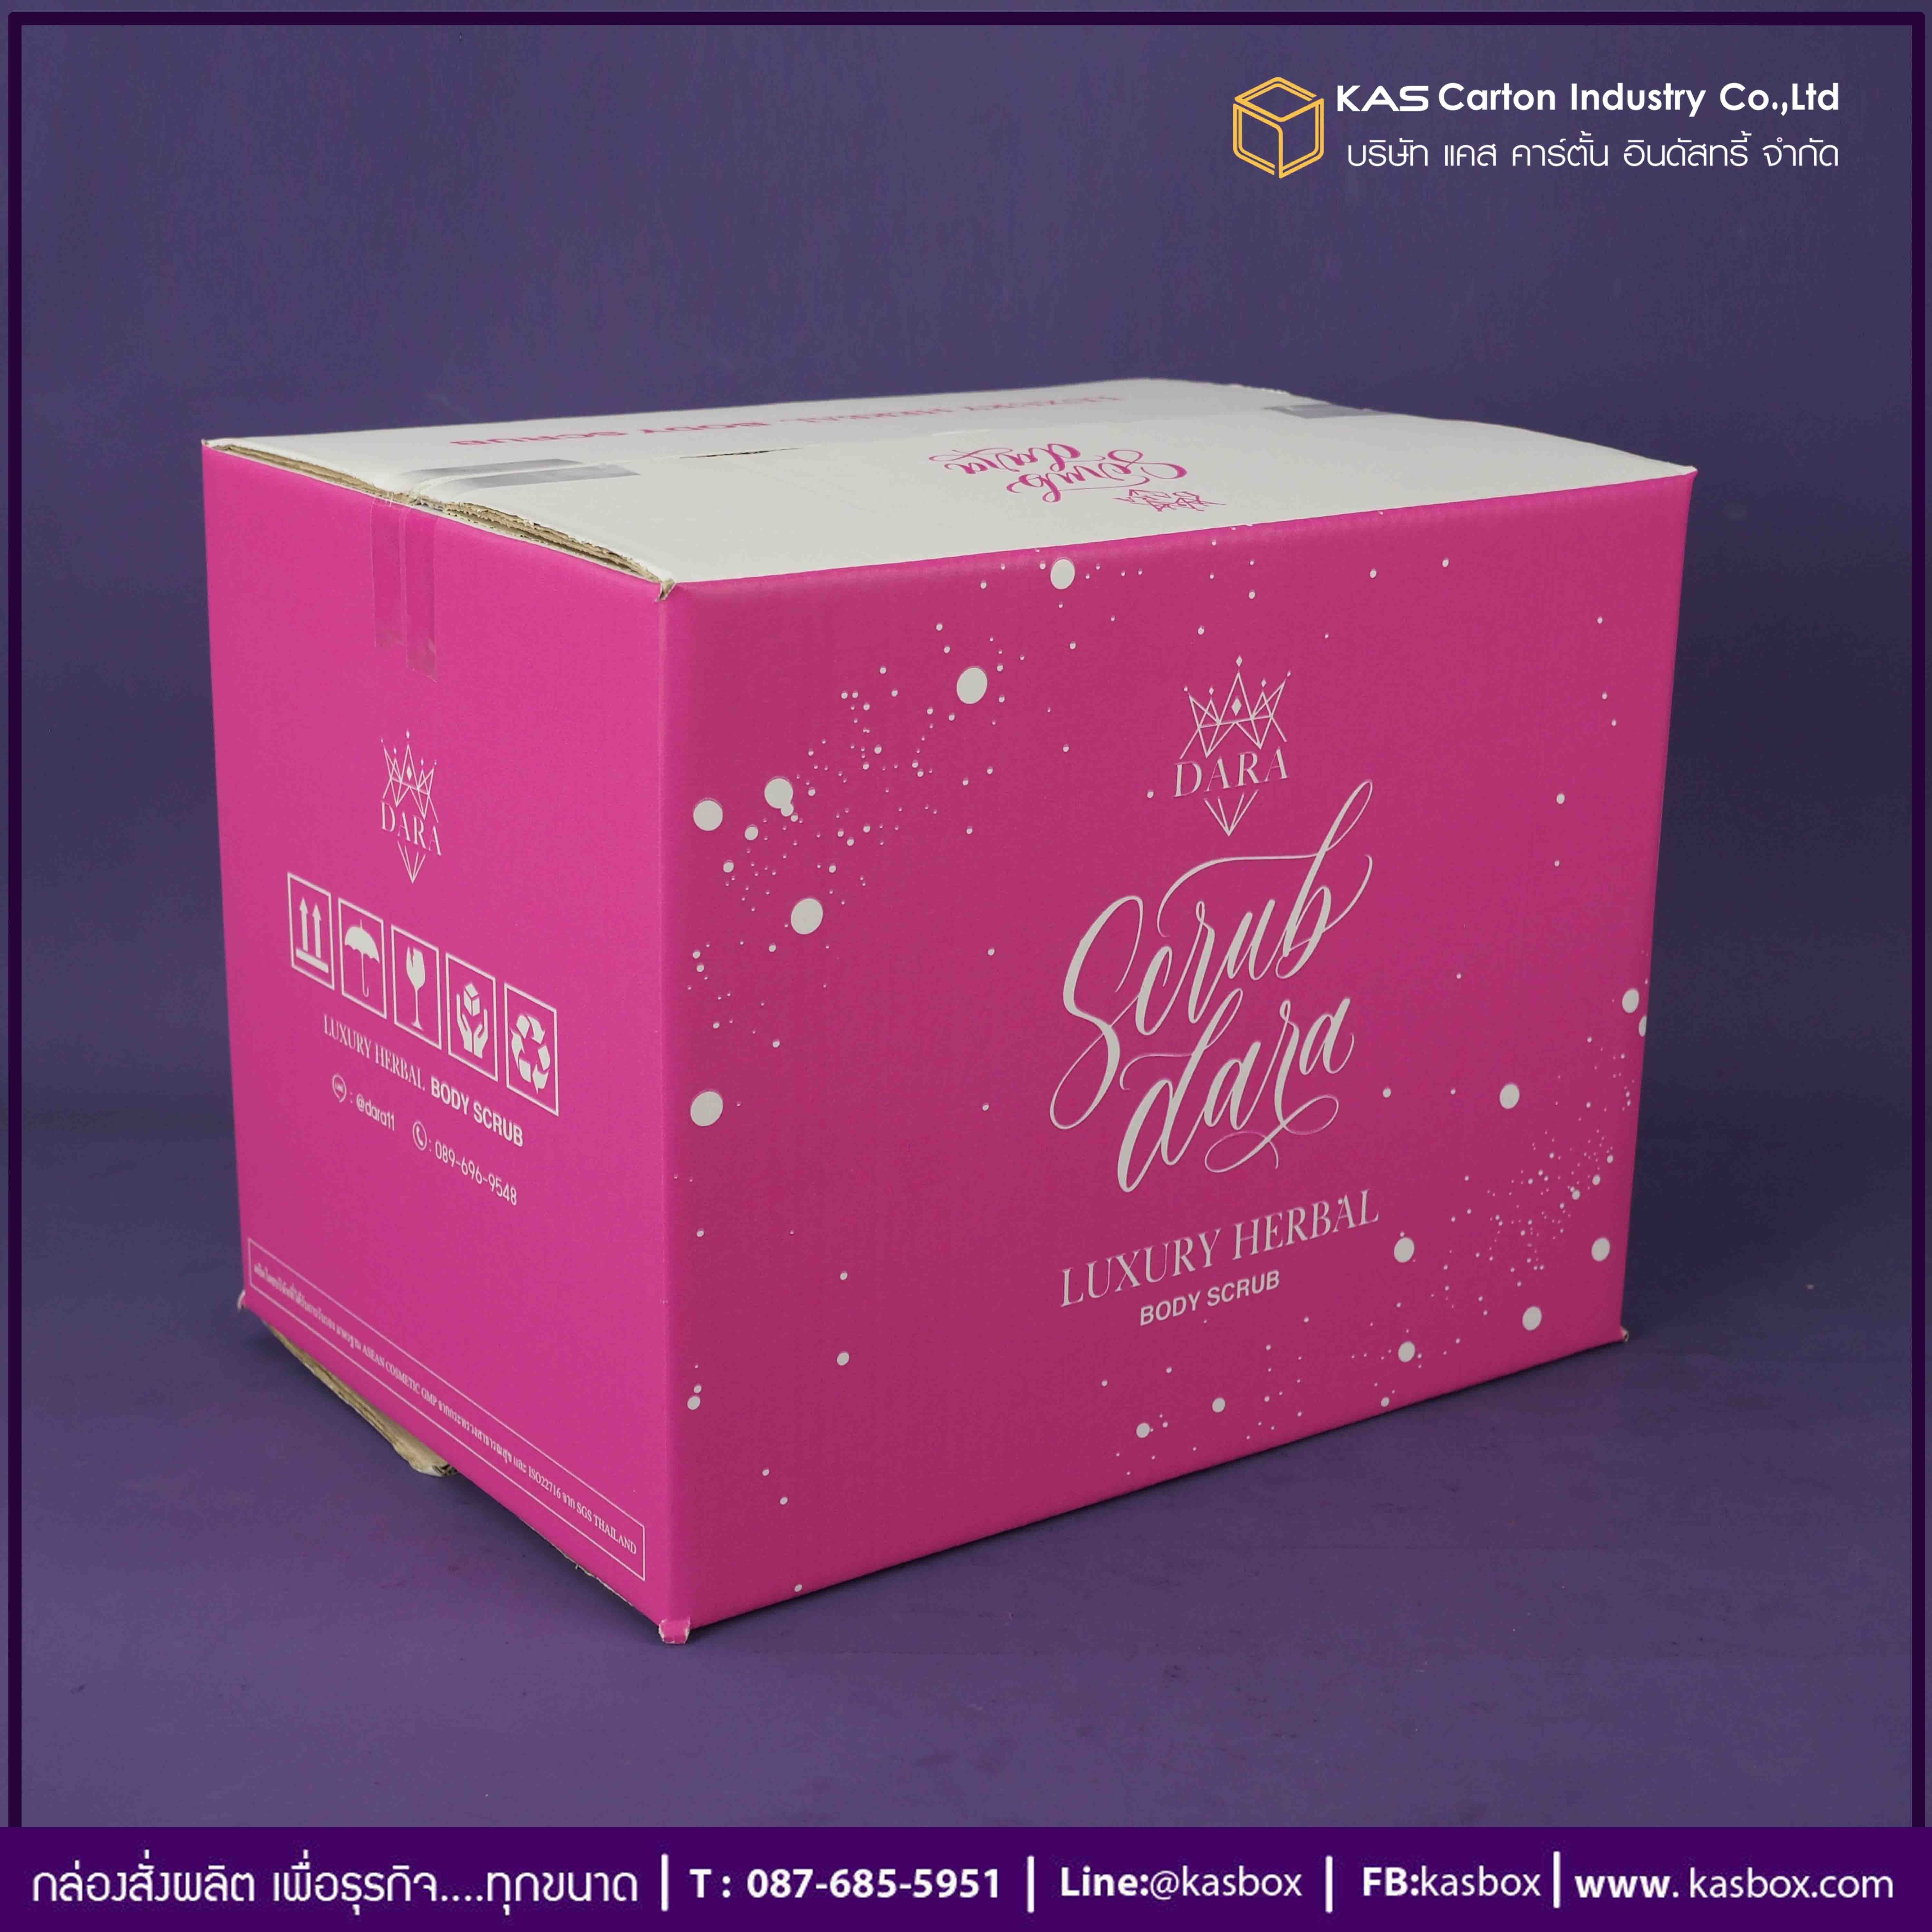 กล่องลูกฟูก สำเร็จรูป และ สั่งผลิต ตามความต้องการลูกค้า กล่องลูกฟูก SME กล่องกระดาษลูกฟูก สินค้าสครับผิวกาย Scrub Dara